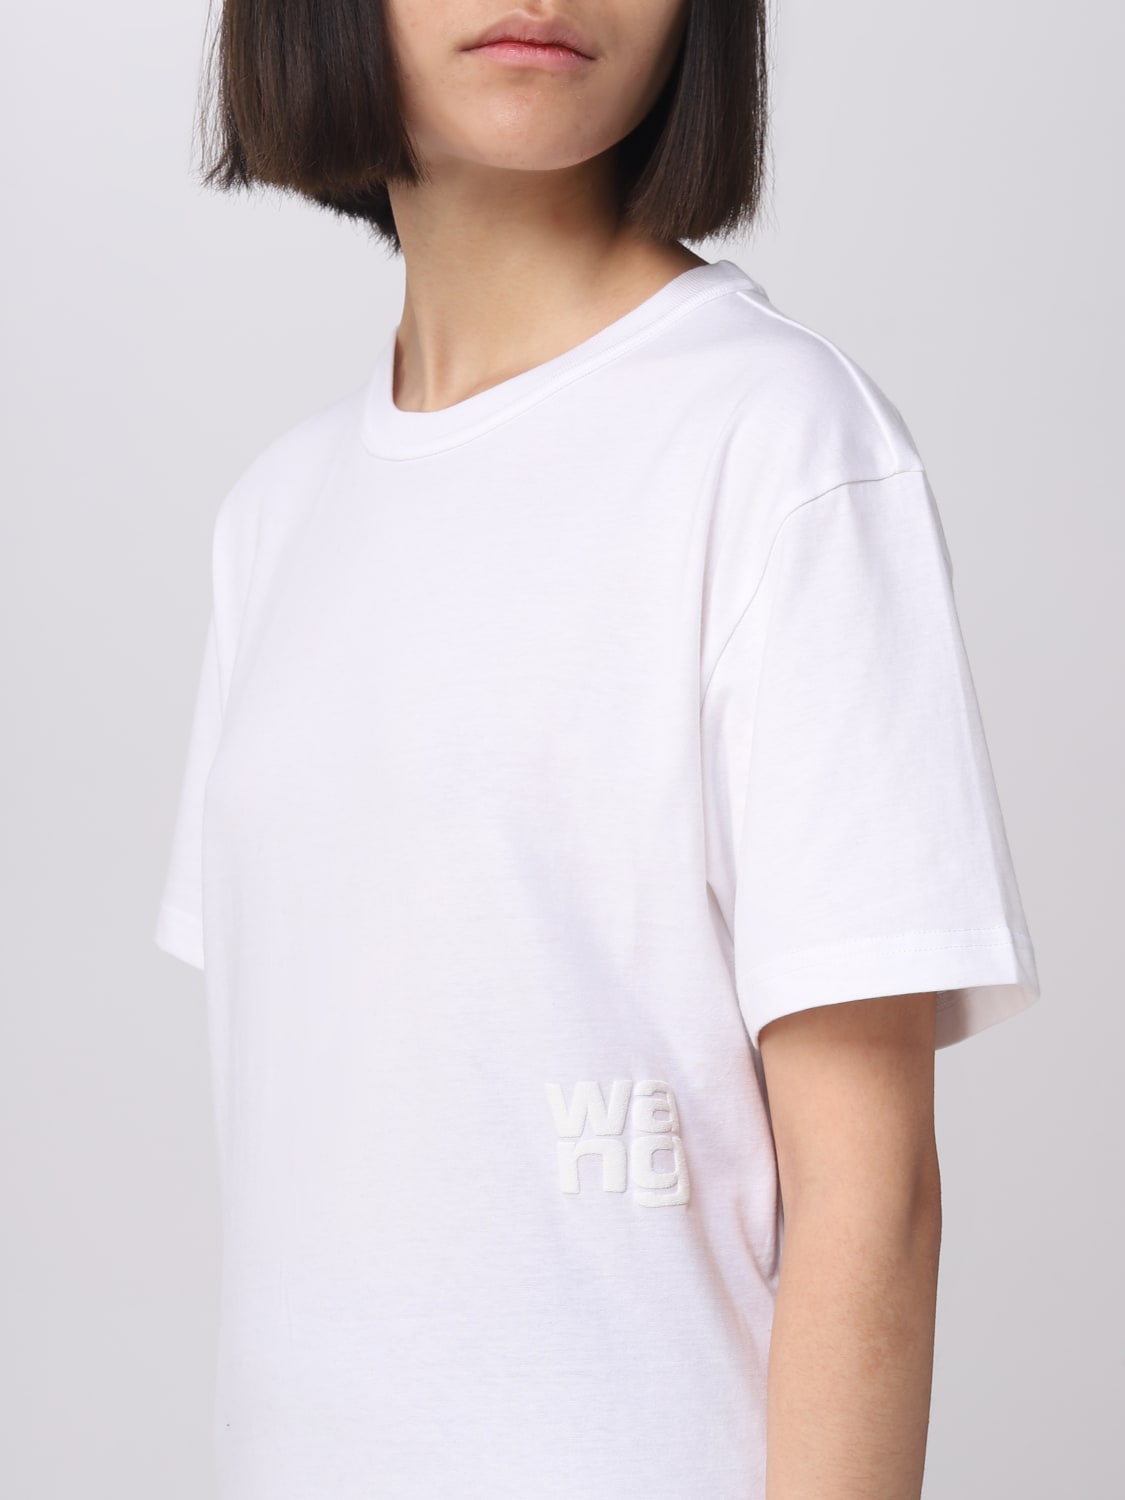 t-shirt woman Alexander - online Outlet: Alexander 4CC3221357 T-shirt White at Wang Wang |